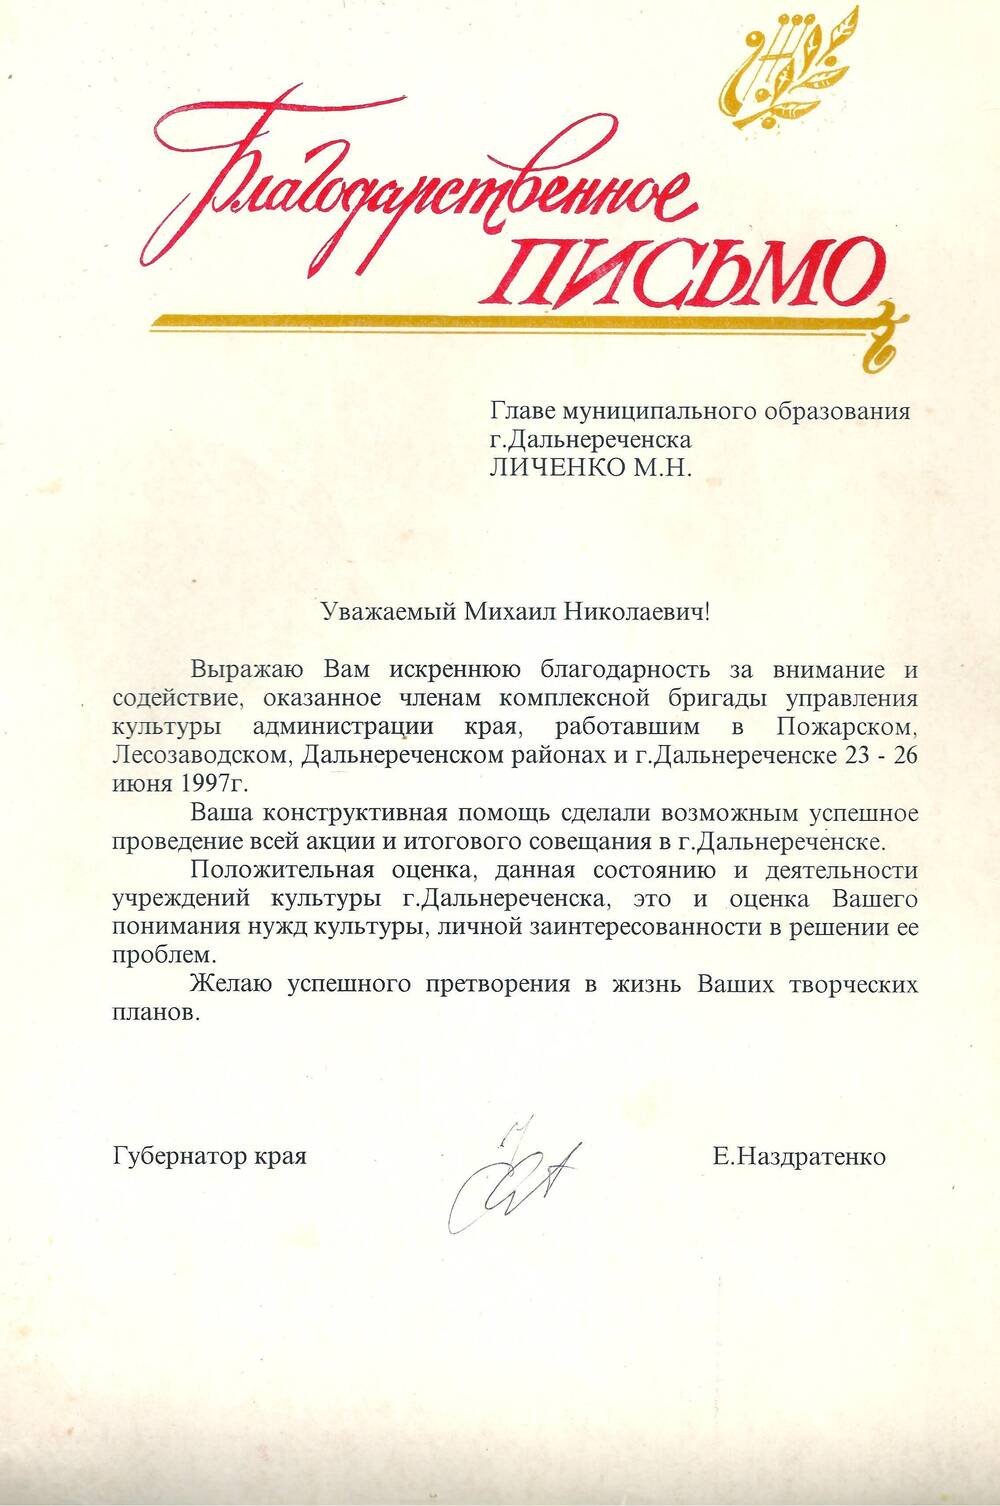 Благодарственное письмо Личенко Михаилу Николаевичу